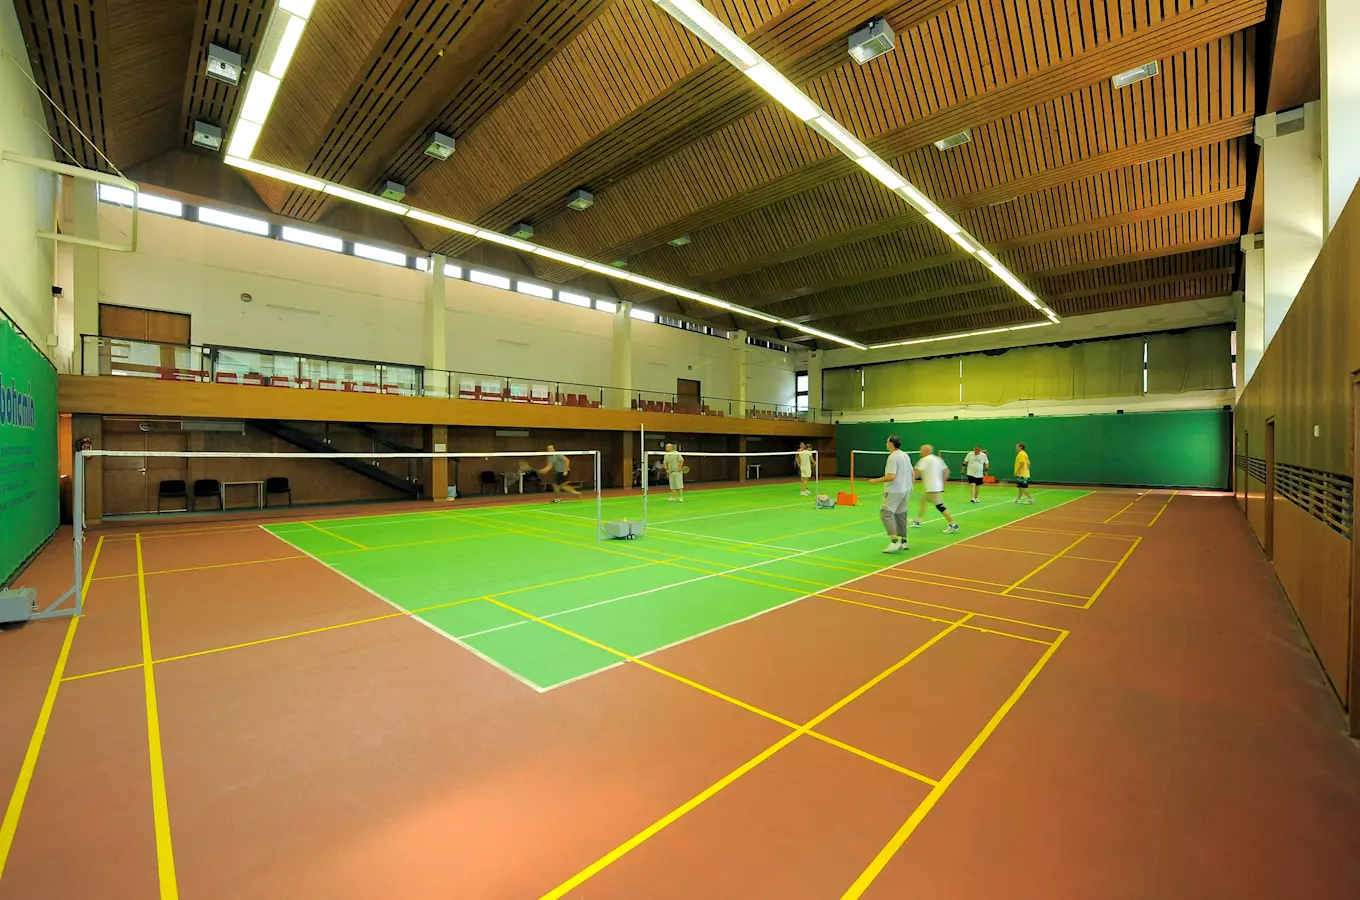 Sportovní centrum Olšanka v Praze 3 - badminton a další sporty